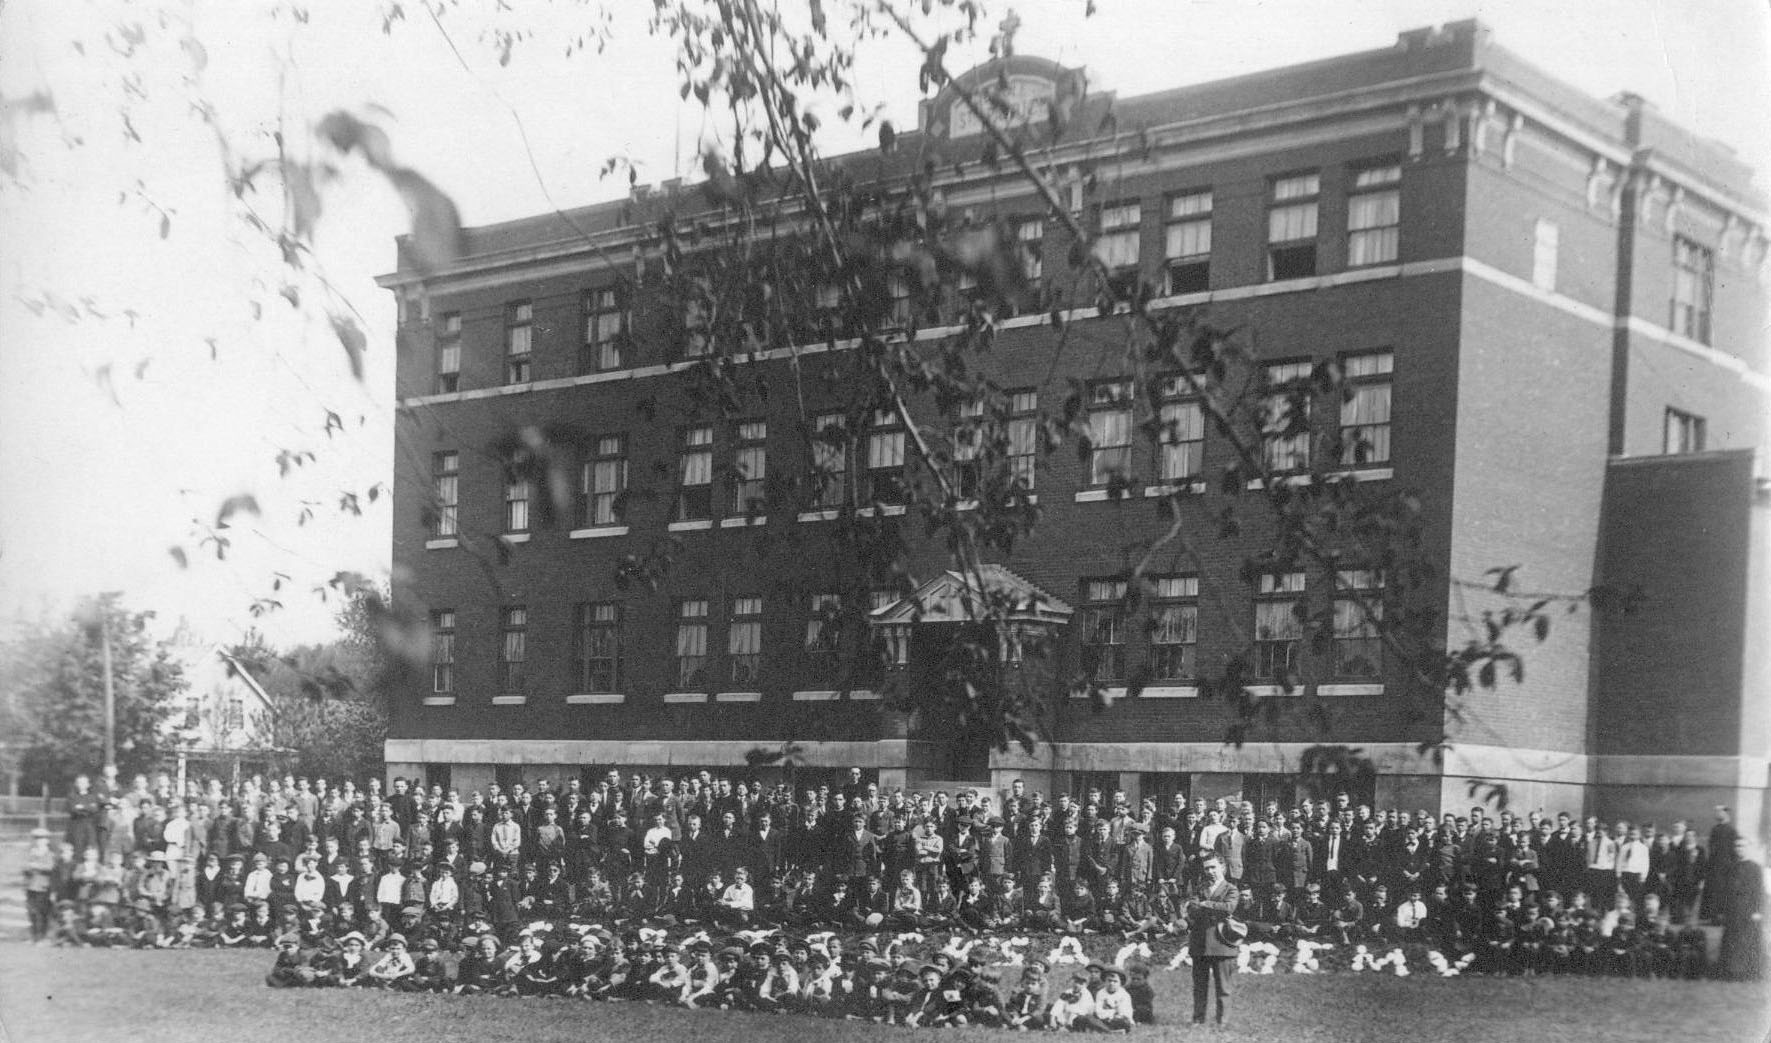 Plus d'une centaine d’écoliers posent devant l’Académie. 